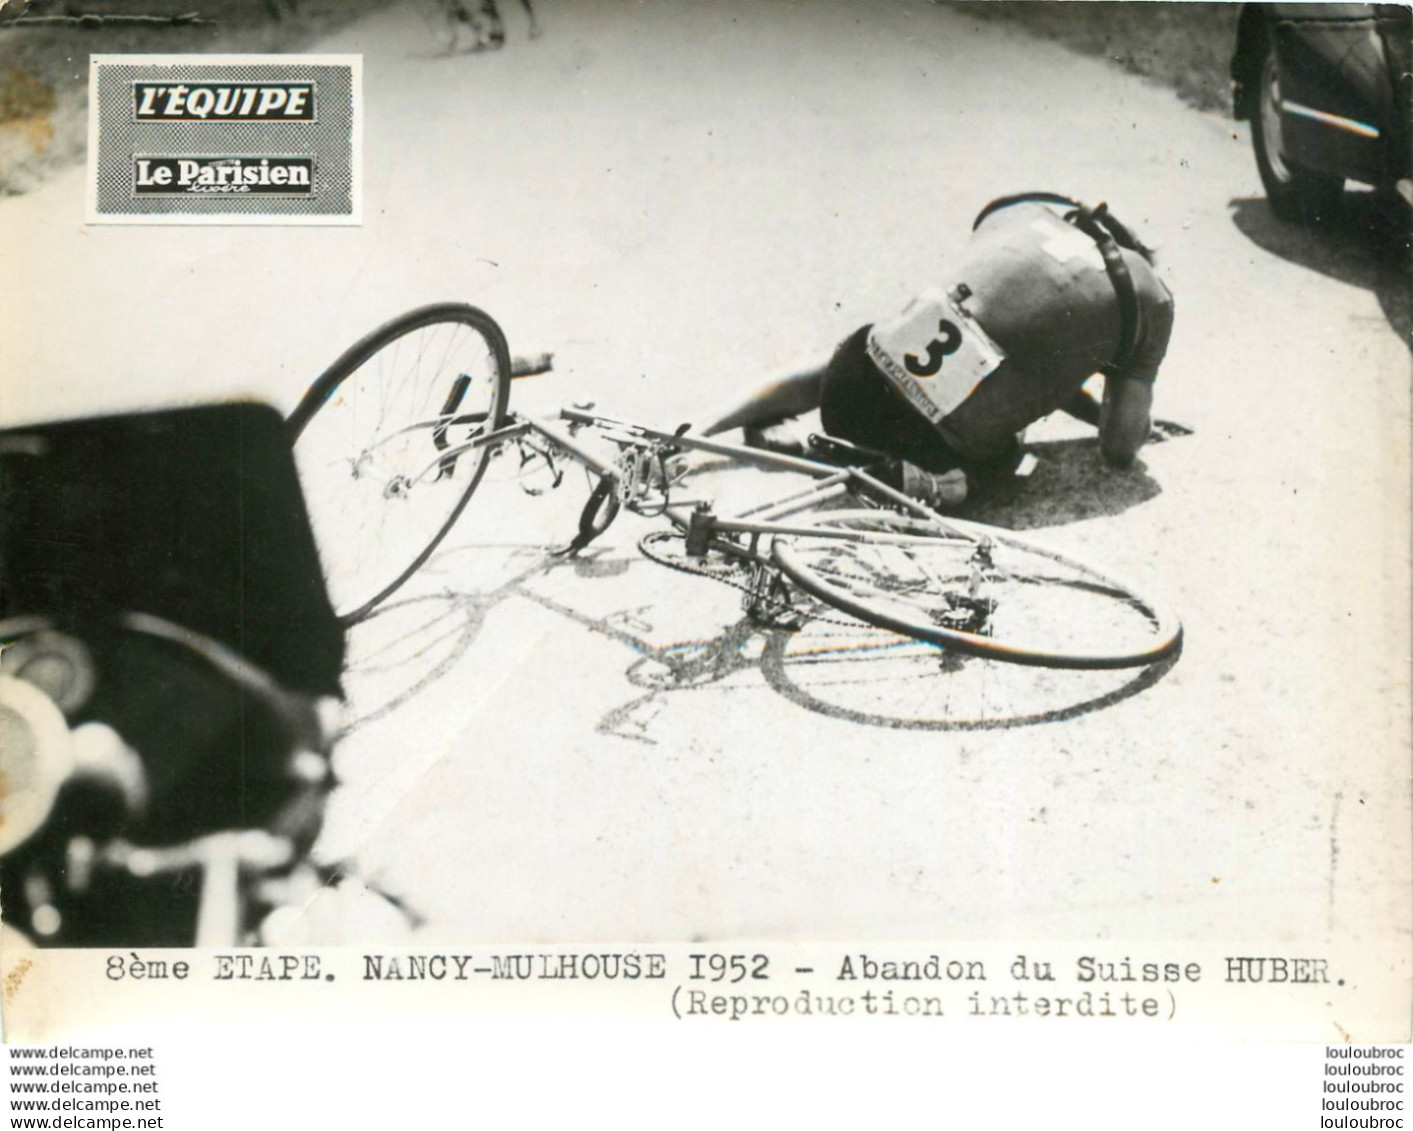 TOUR DE FRANCE 1952 ABANDON DU SUISSE HUBER 8ème ETAPE PHOTO DE PRESSE ORIGINALE ARGENTIQUE  20X15CM EQUIPE  LE PARISIEN - Sporten